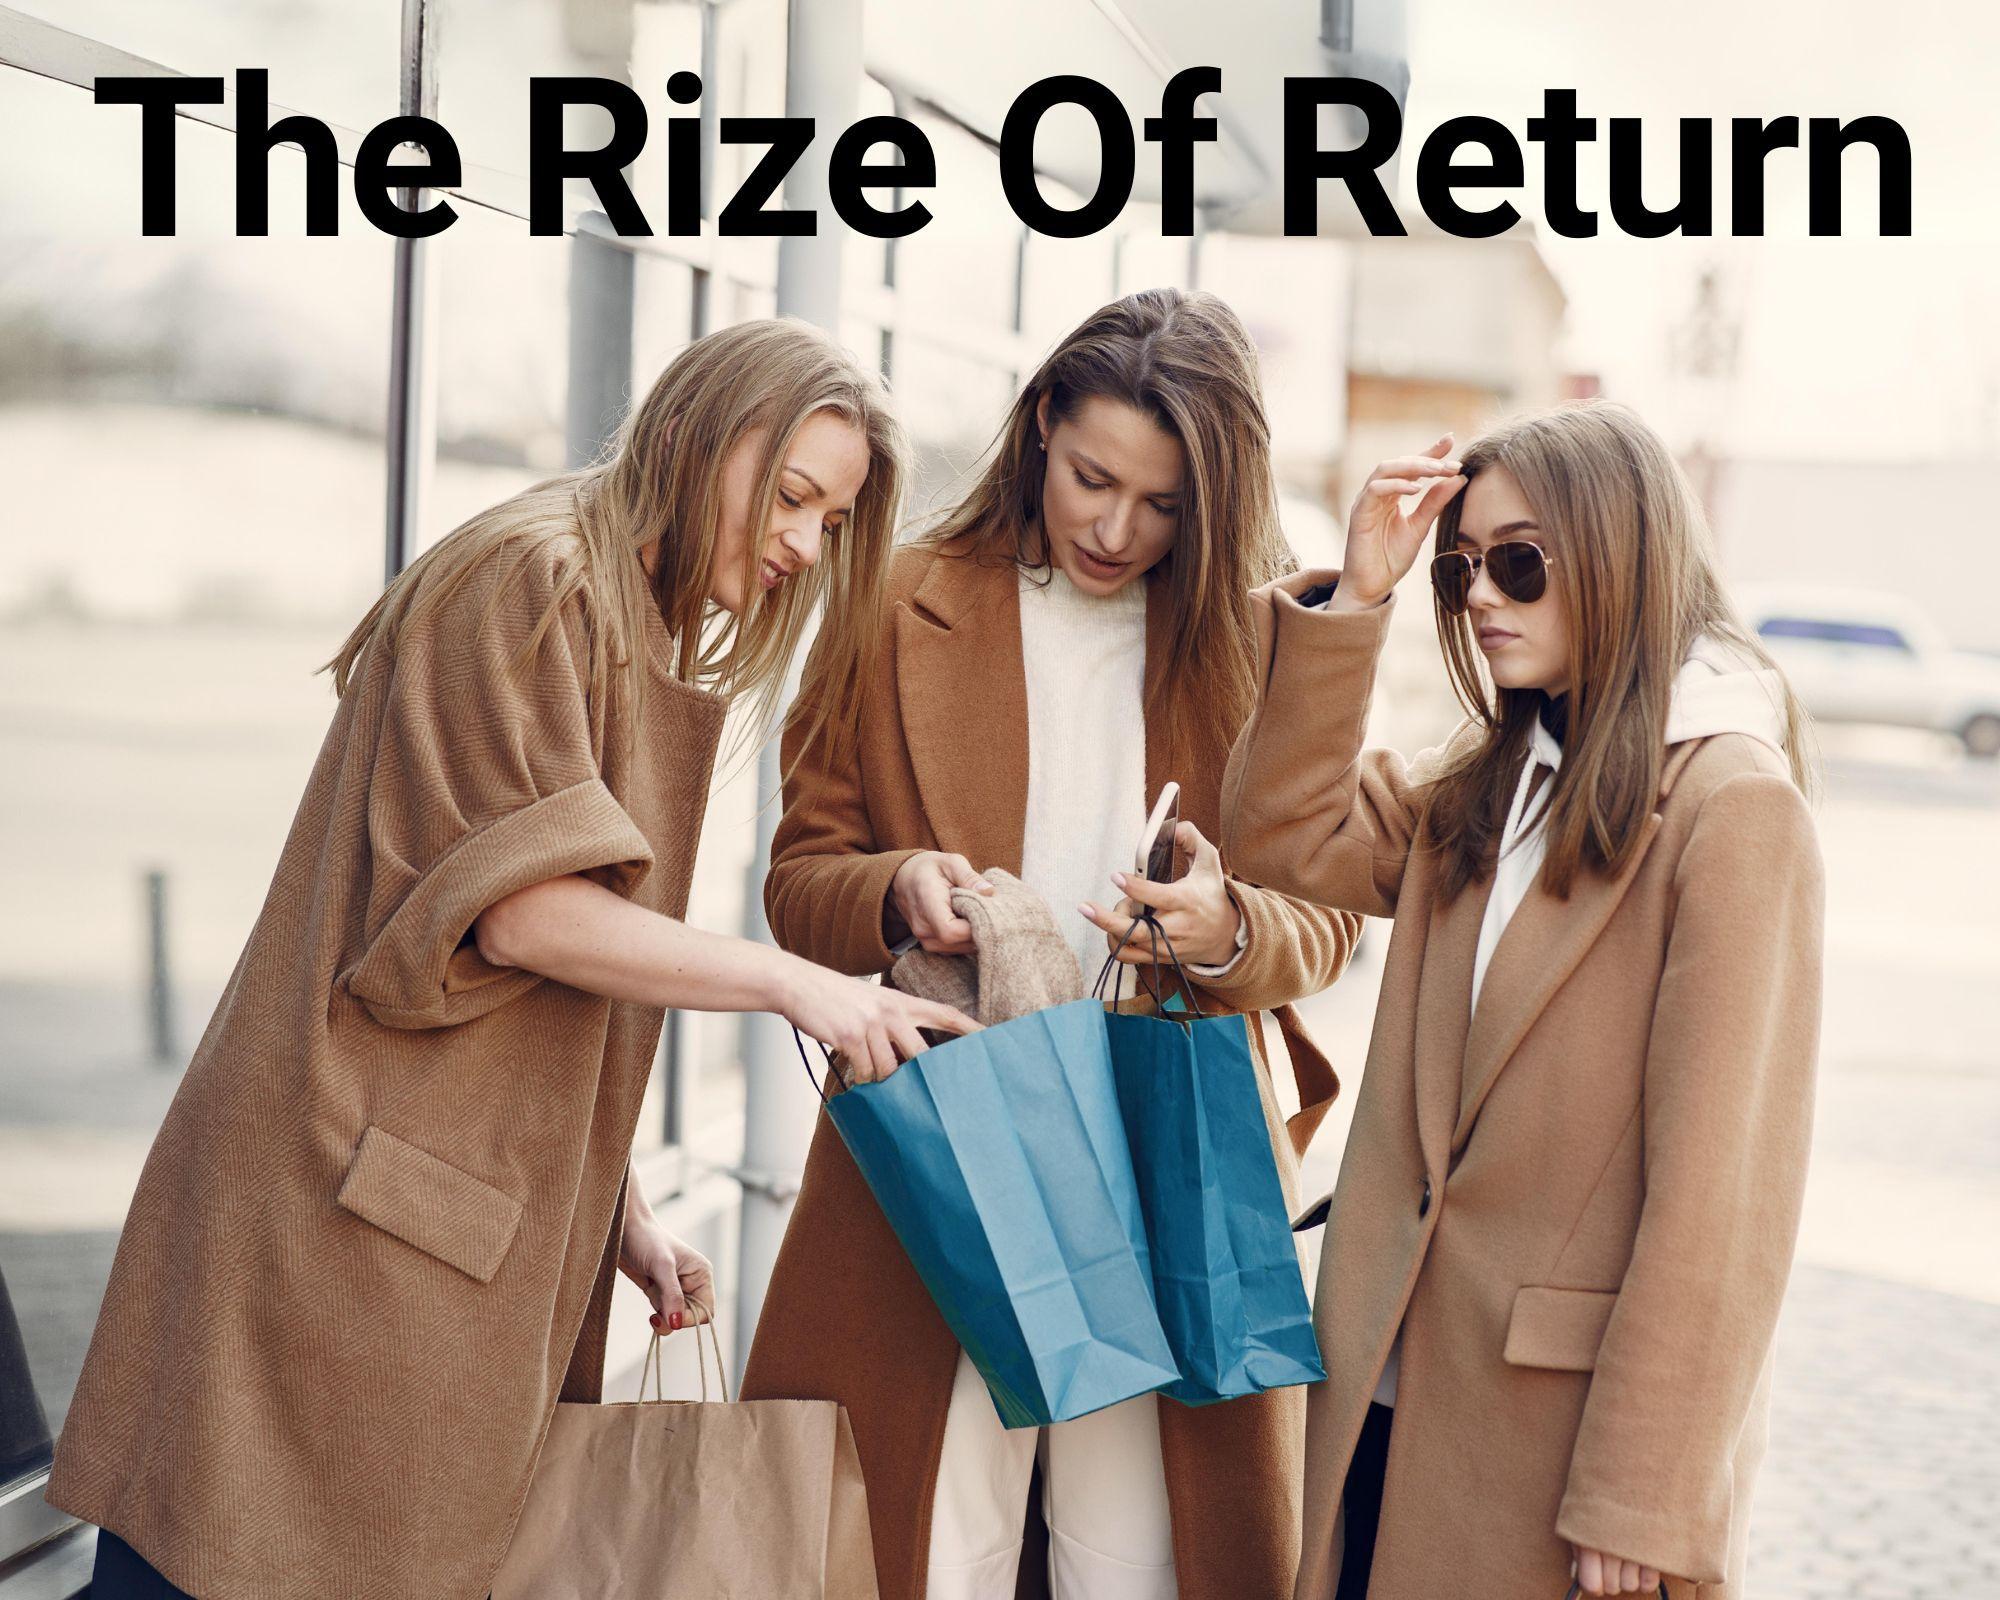  the rise of return culture